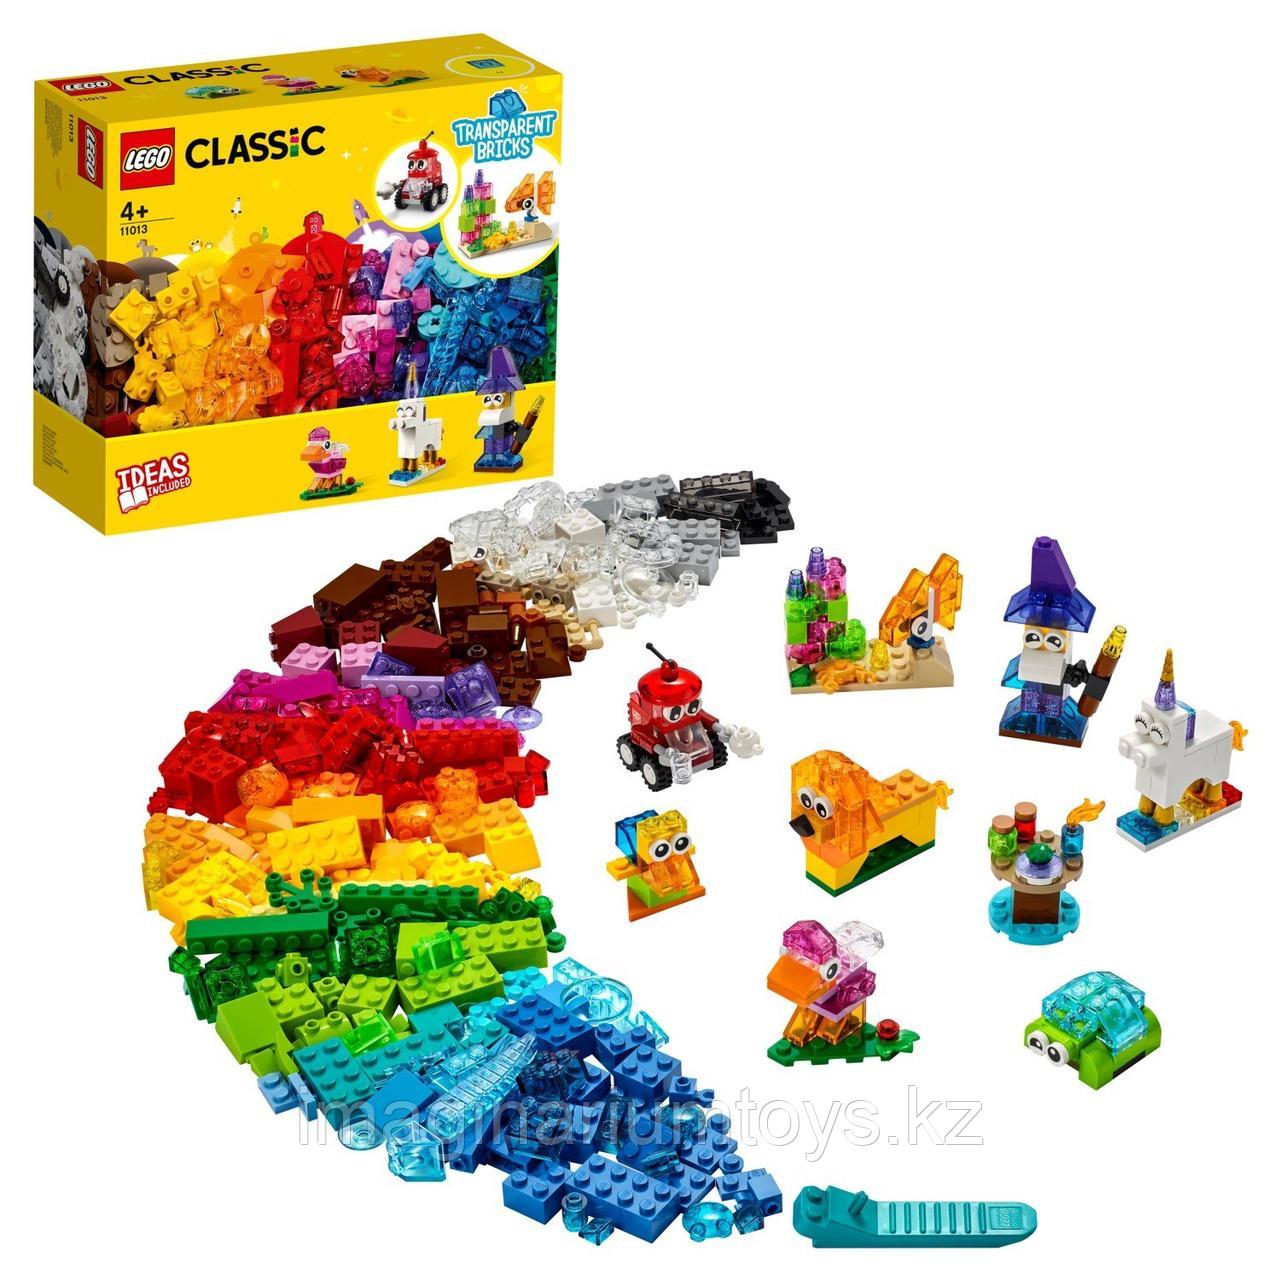 Детский конструктор LEGO Classic Прозрачные кубики 11013, фото 1